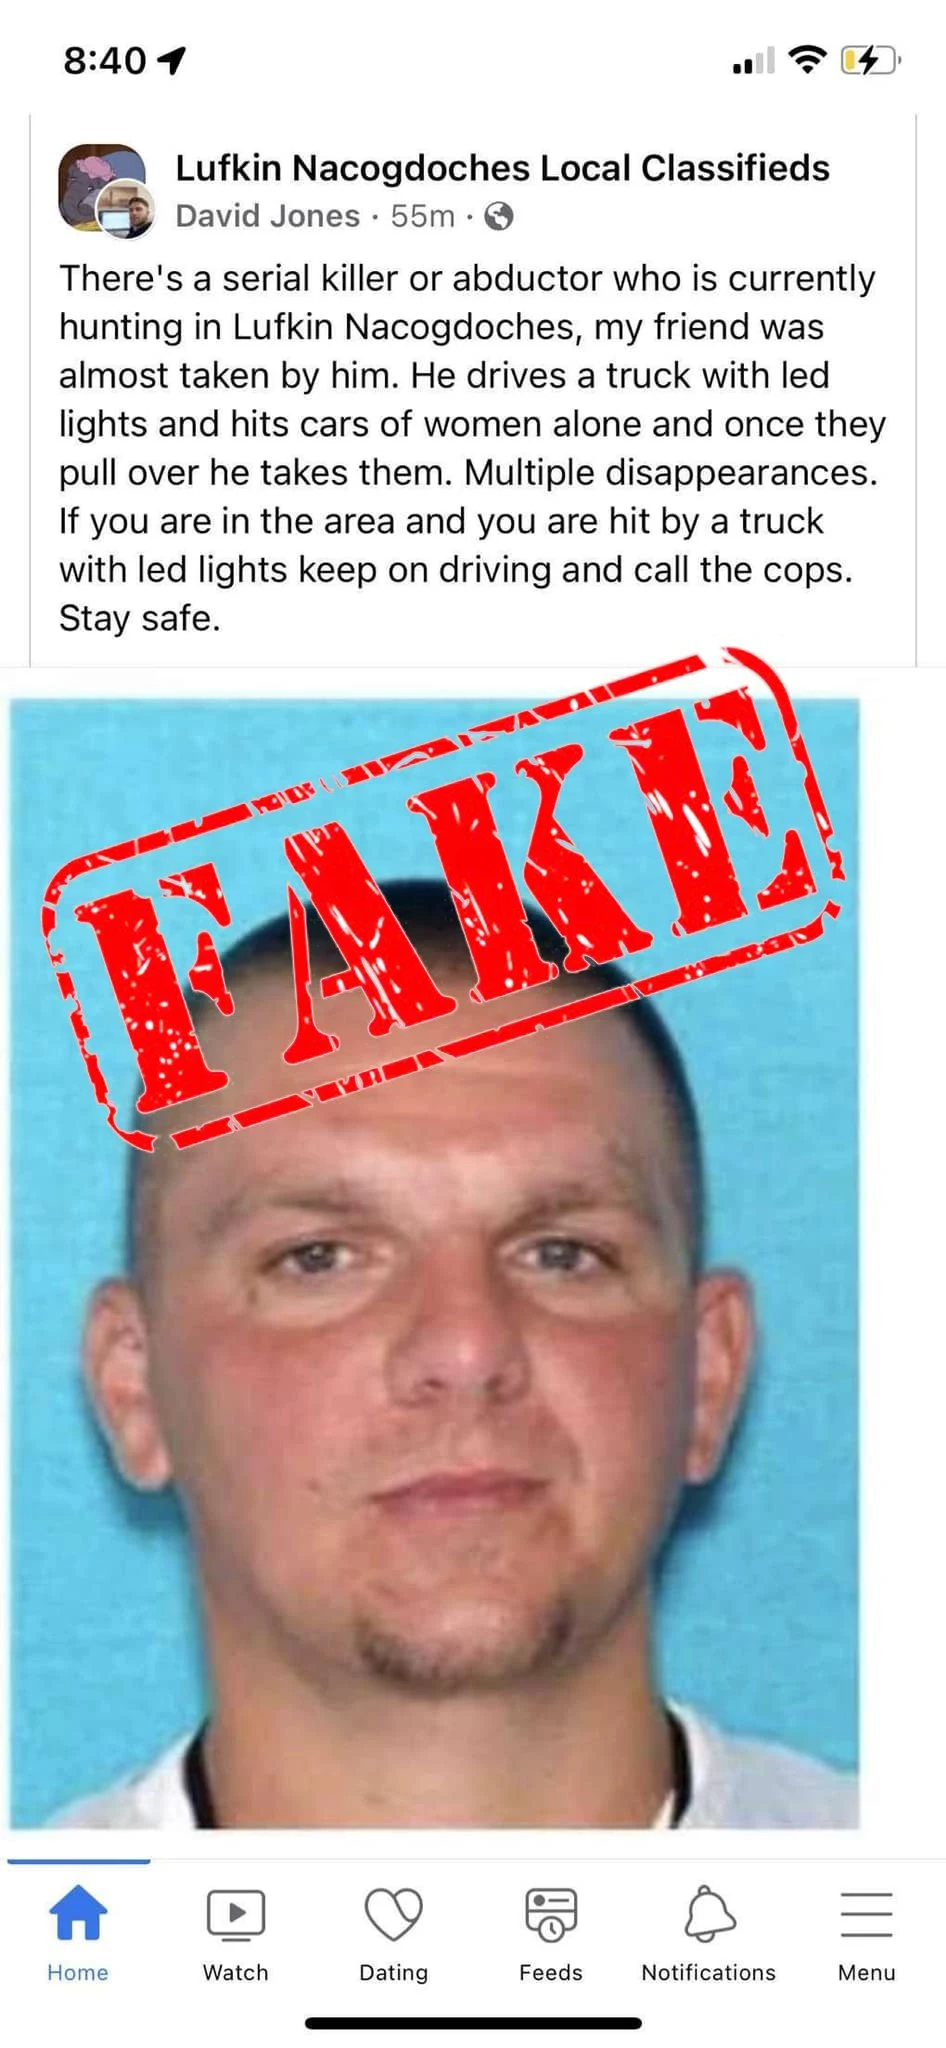 Fake Facebook Warning Of Serial Killer Spreading In Lufkin, Texas